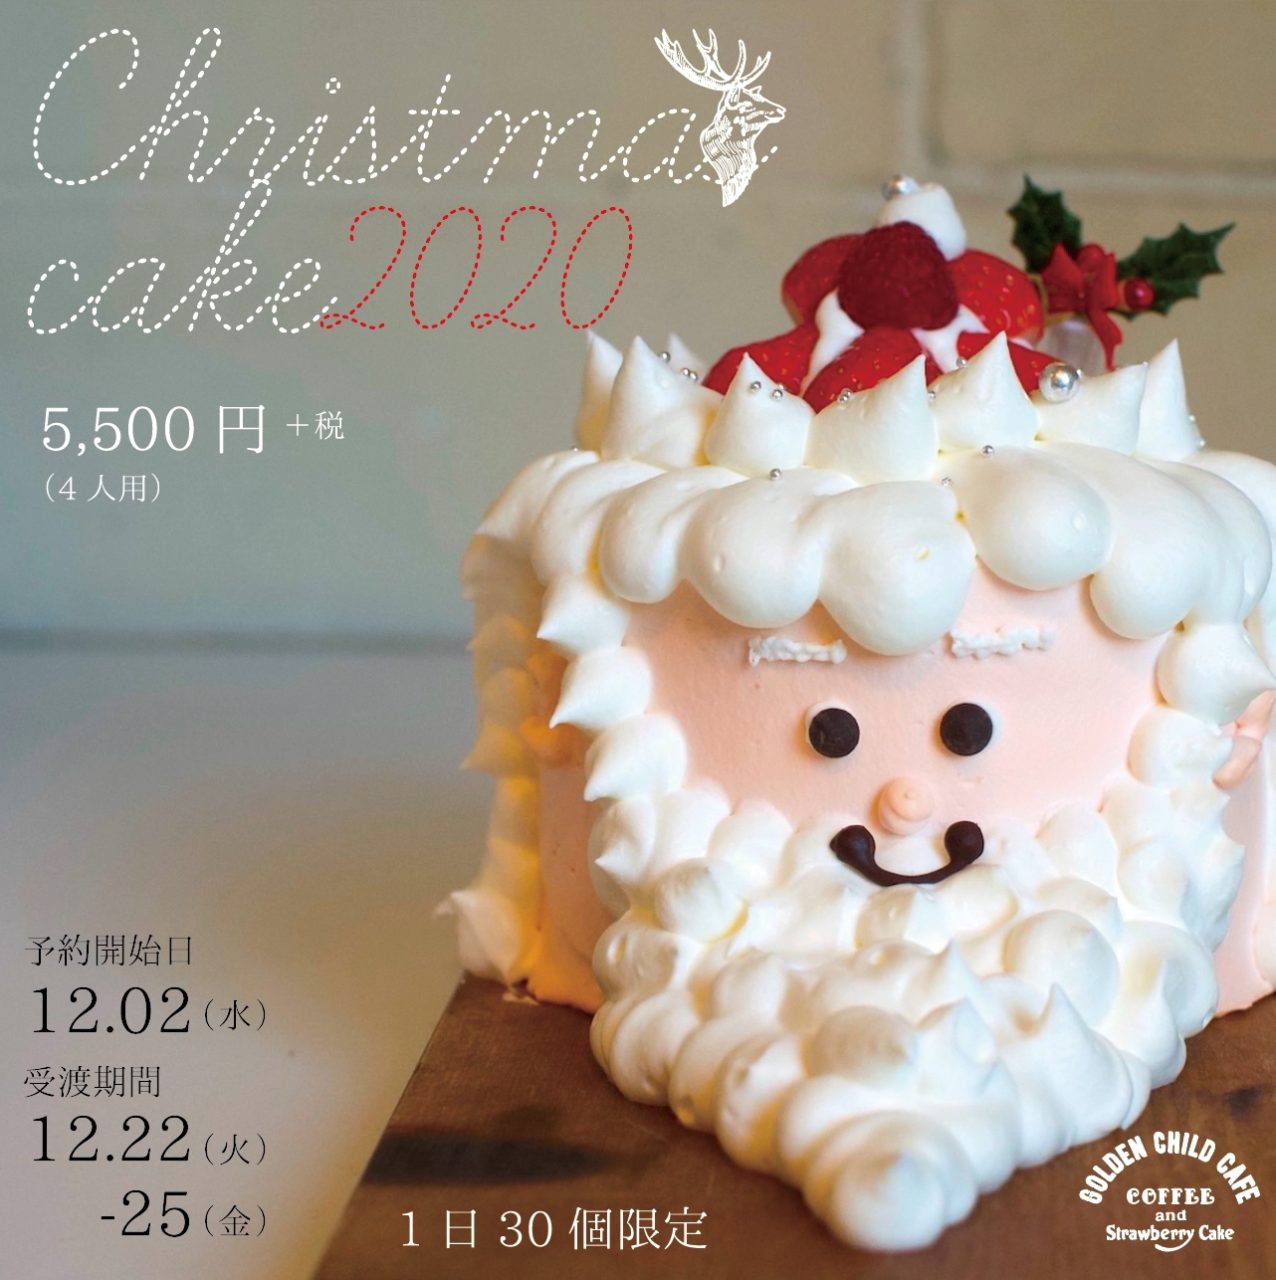 サンタクリスマスケーキ販売開始 ゴールデンチャイルドカフェ ゴルチャ 名古屋のカフェレストラン